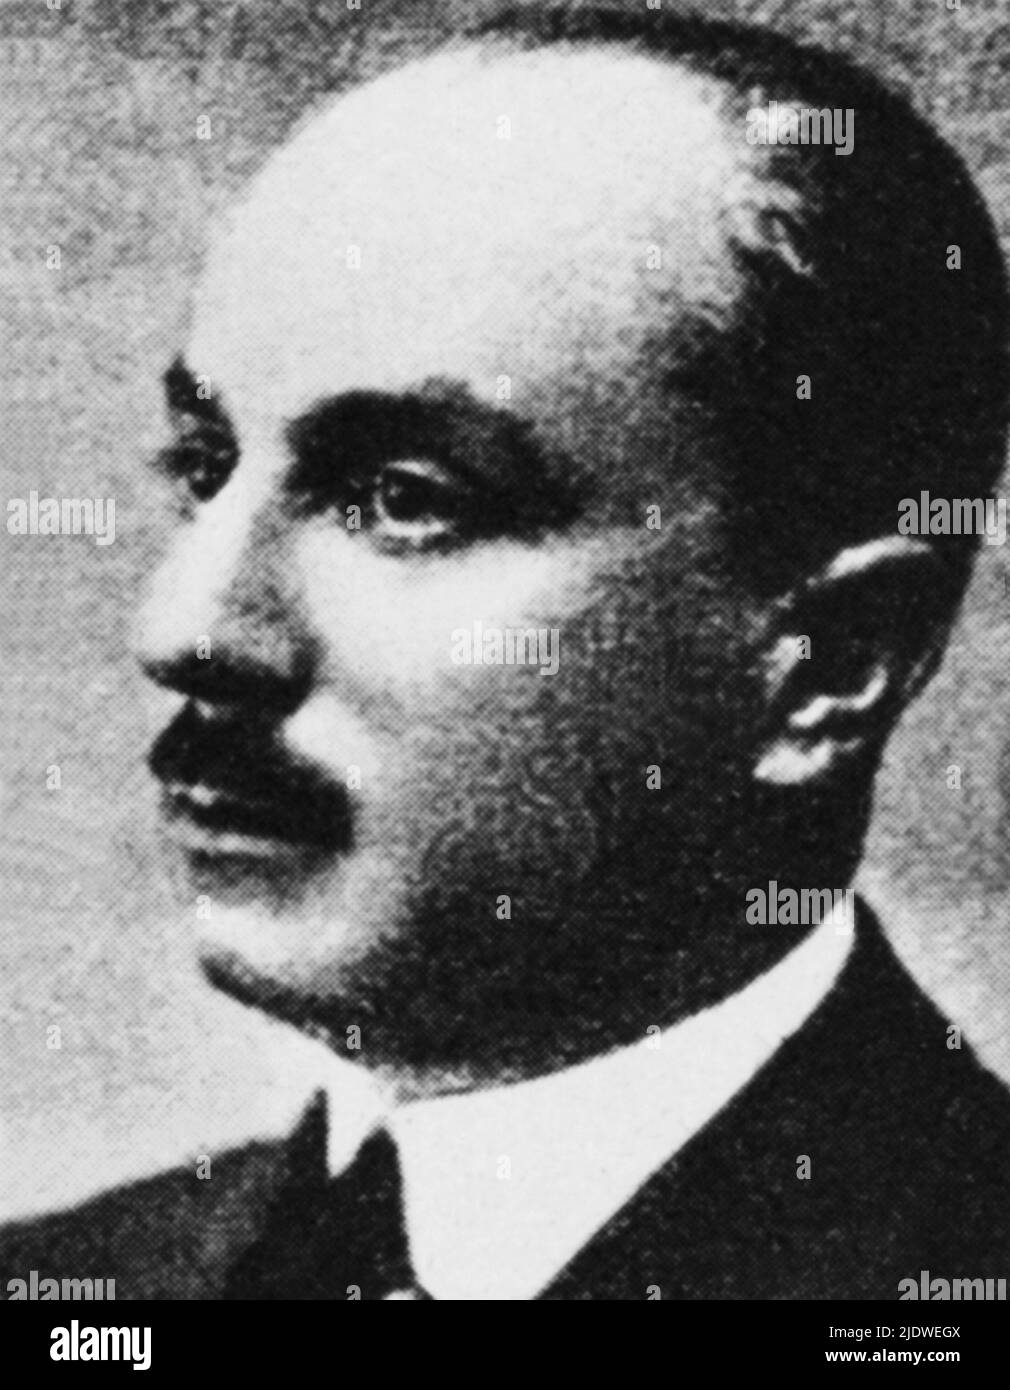 1920er Jahre , Roma , ITALIEN : der faschistische CESARE ROSSI ( 1887 - 1967 ) , Einer der ersten Ankläger von Duce und Giovanni Marinelli für den Mord an dem italienischen Sozialisten GIACOMO MATTEOTTI der Tag 10 juni 1924 - SOCIALISMO - PARTITO SOCIALISTA - SOZIALISMUS - POLITICO - Portrait - ritratto - FASCHISMO - vittima del nazi-faschismo - RAPITO - RAPIMENTO - faschismus - Faschismus - Squadrista - Squadrismo ---- Archivio GBB Stockfoto